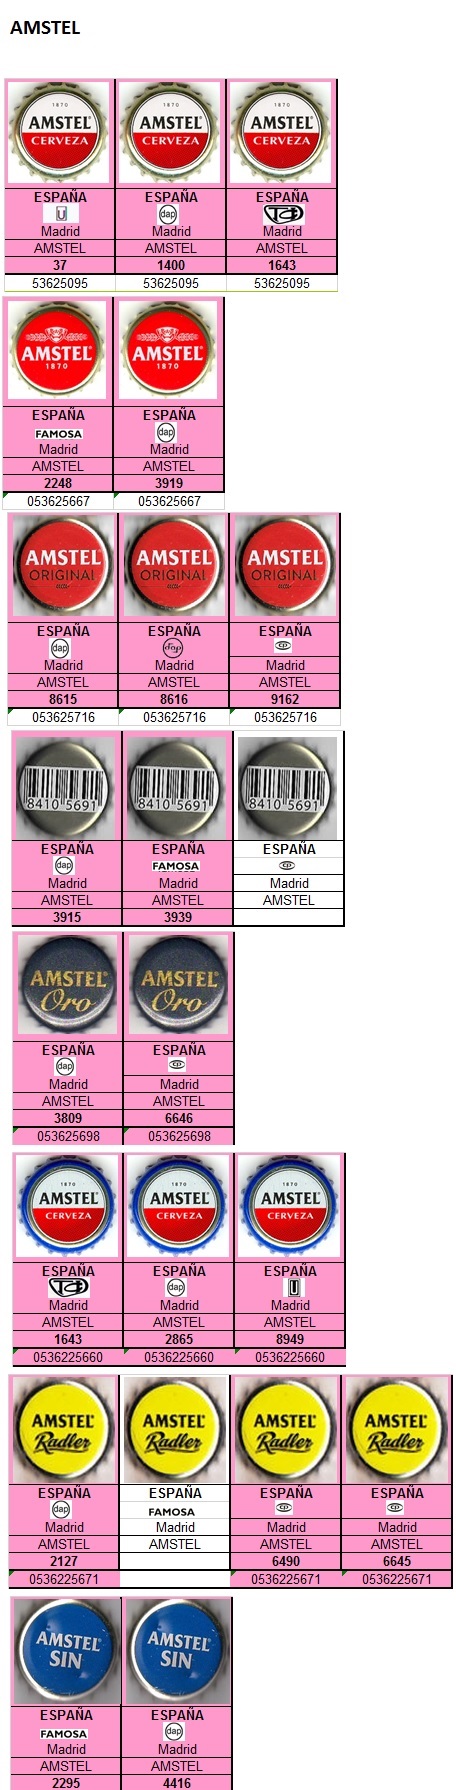 Amstel Amstel11